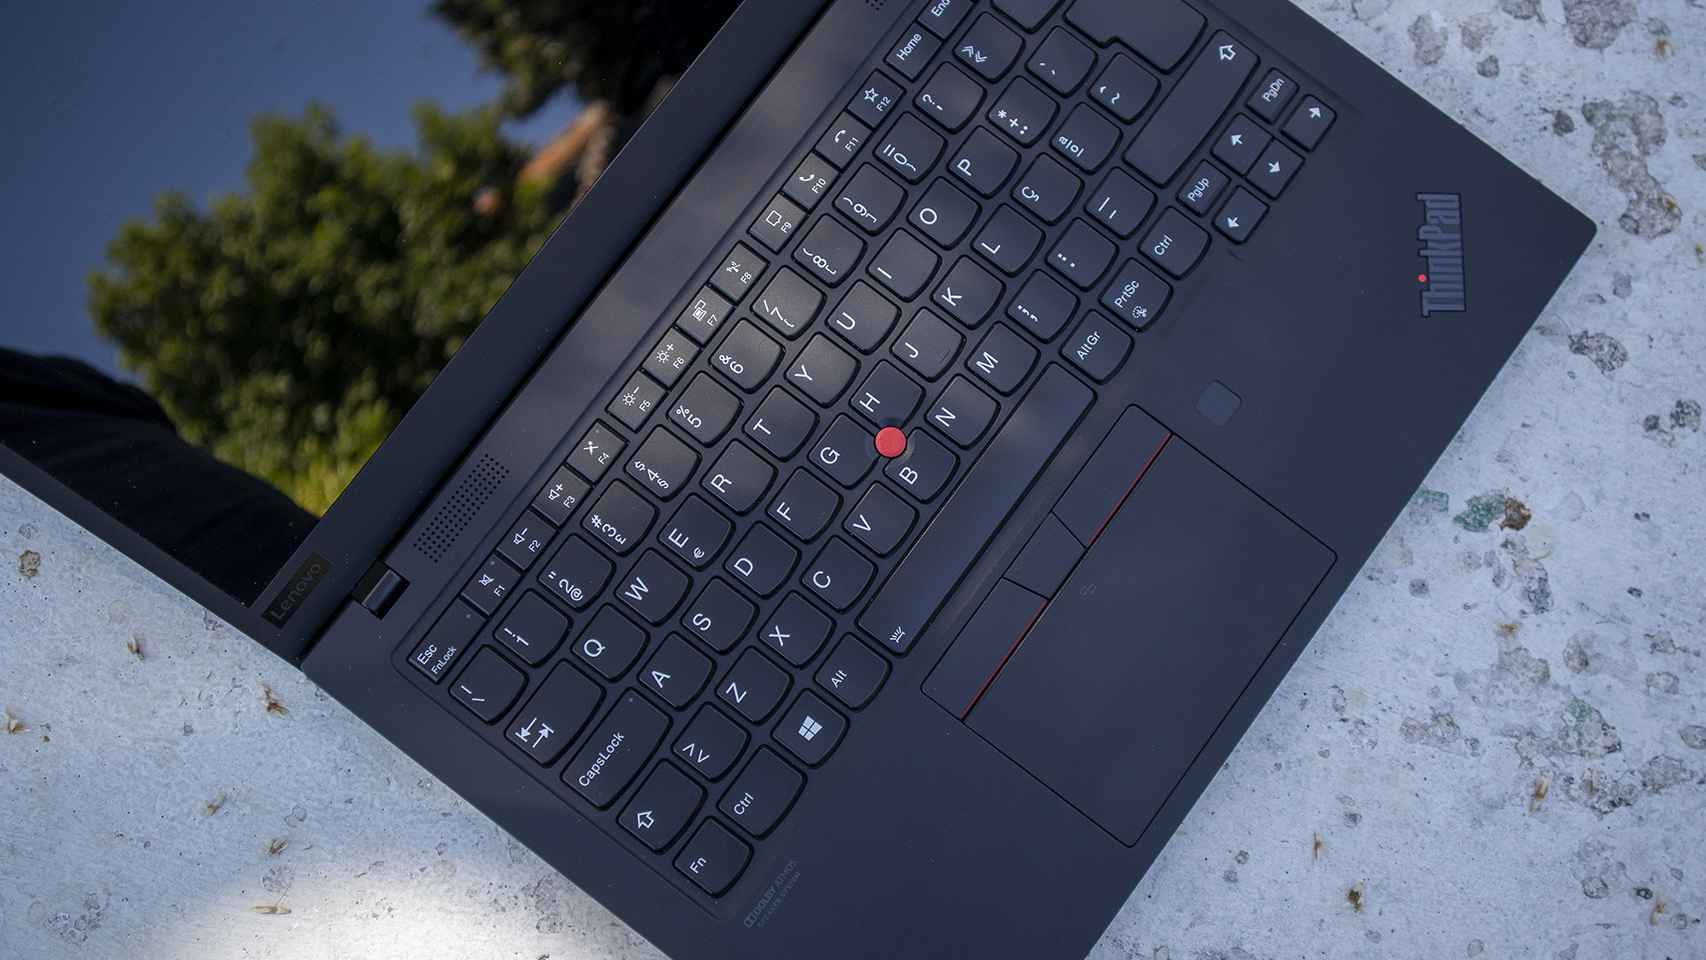 Análisis: Probamos el ThinkPad X1 Carbon, el portátil perfecto más